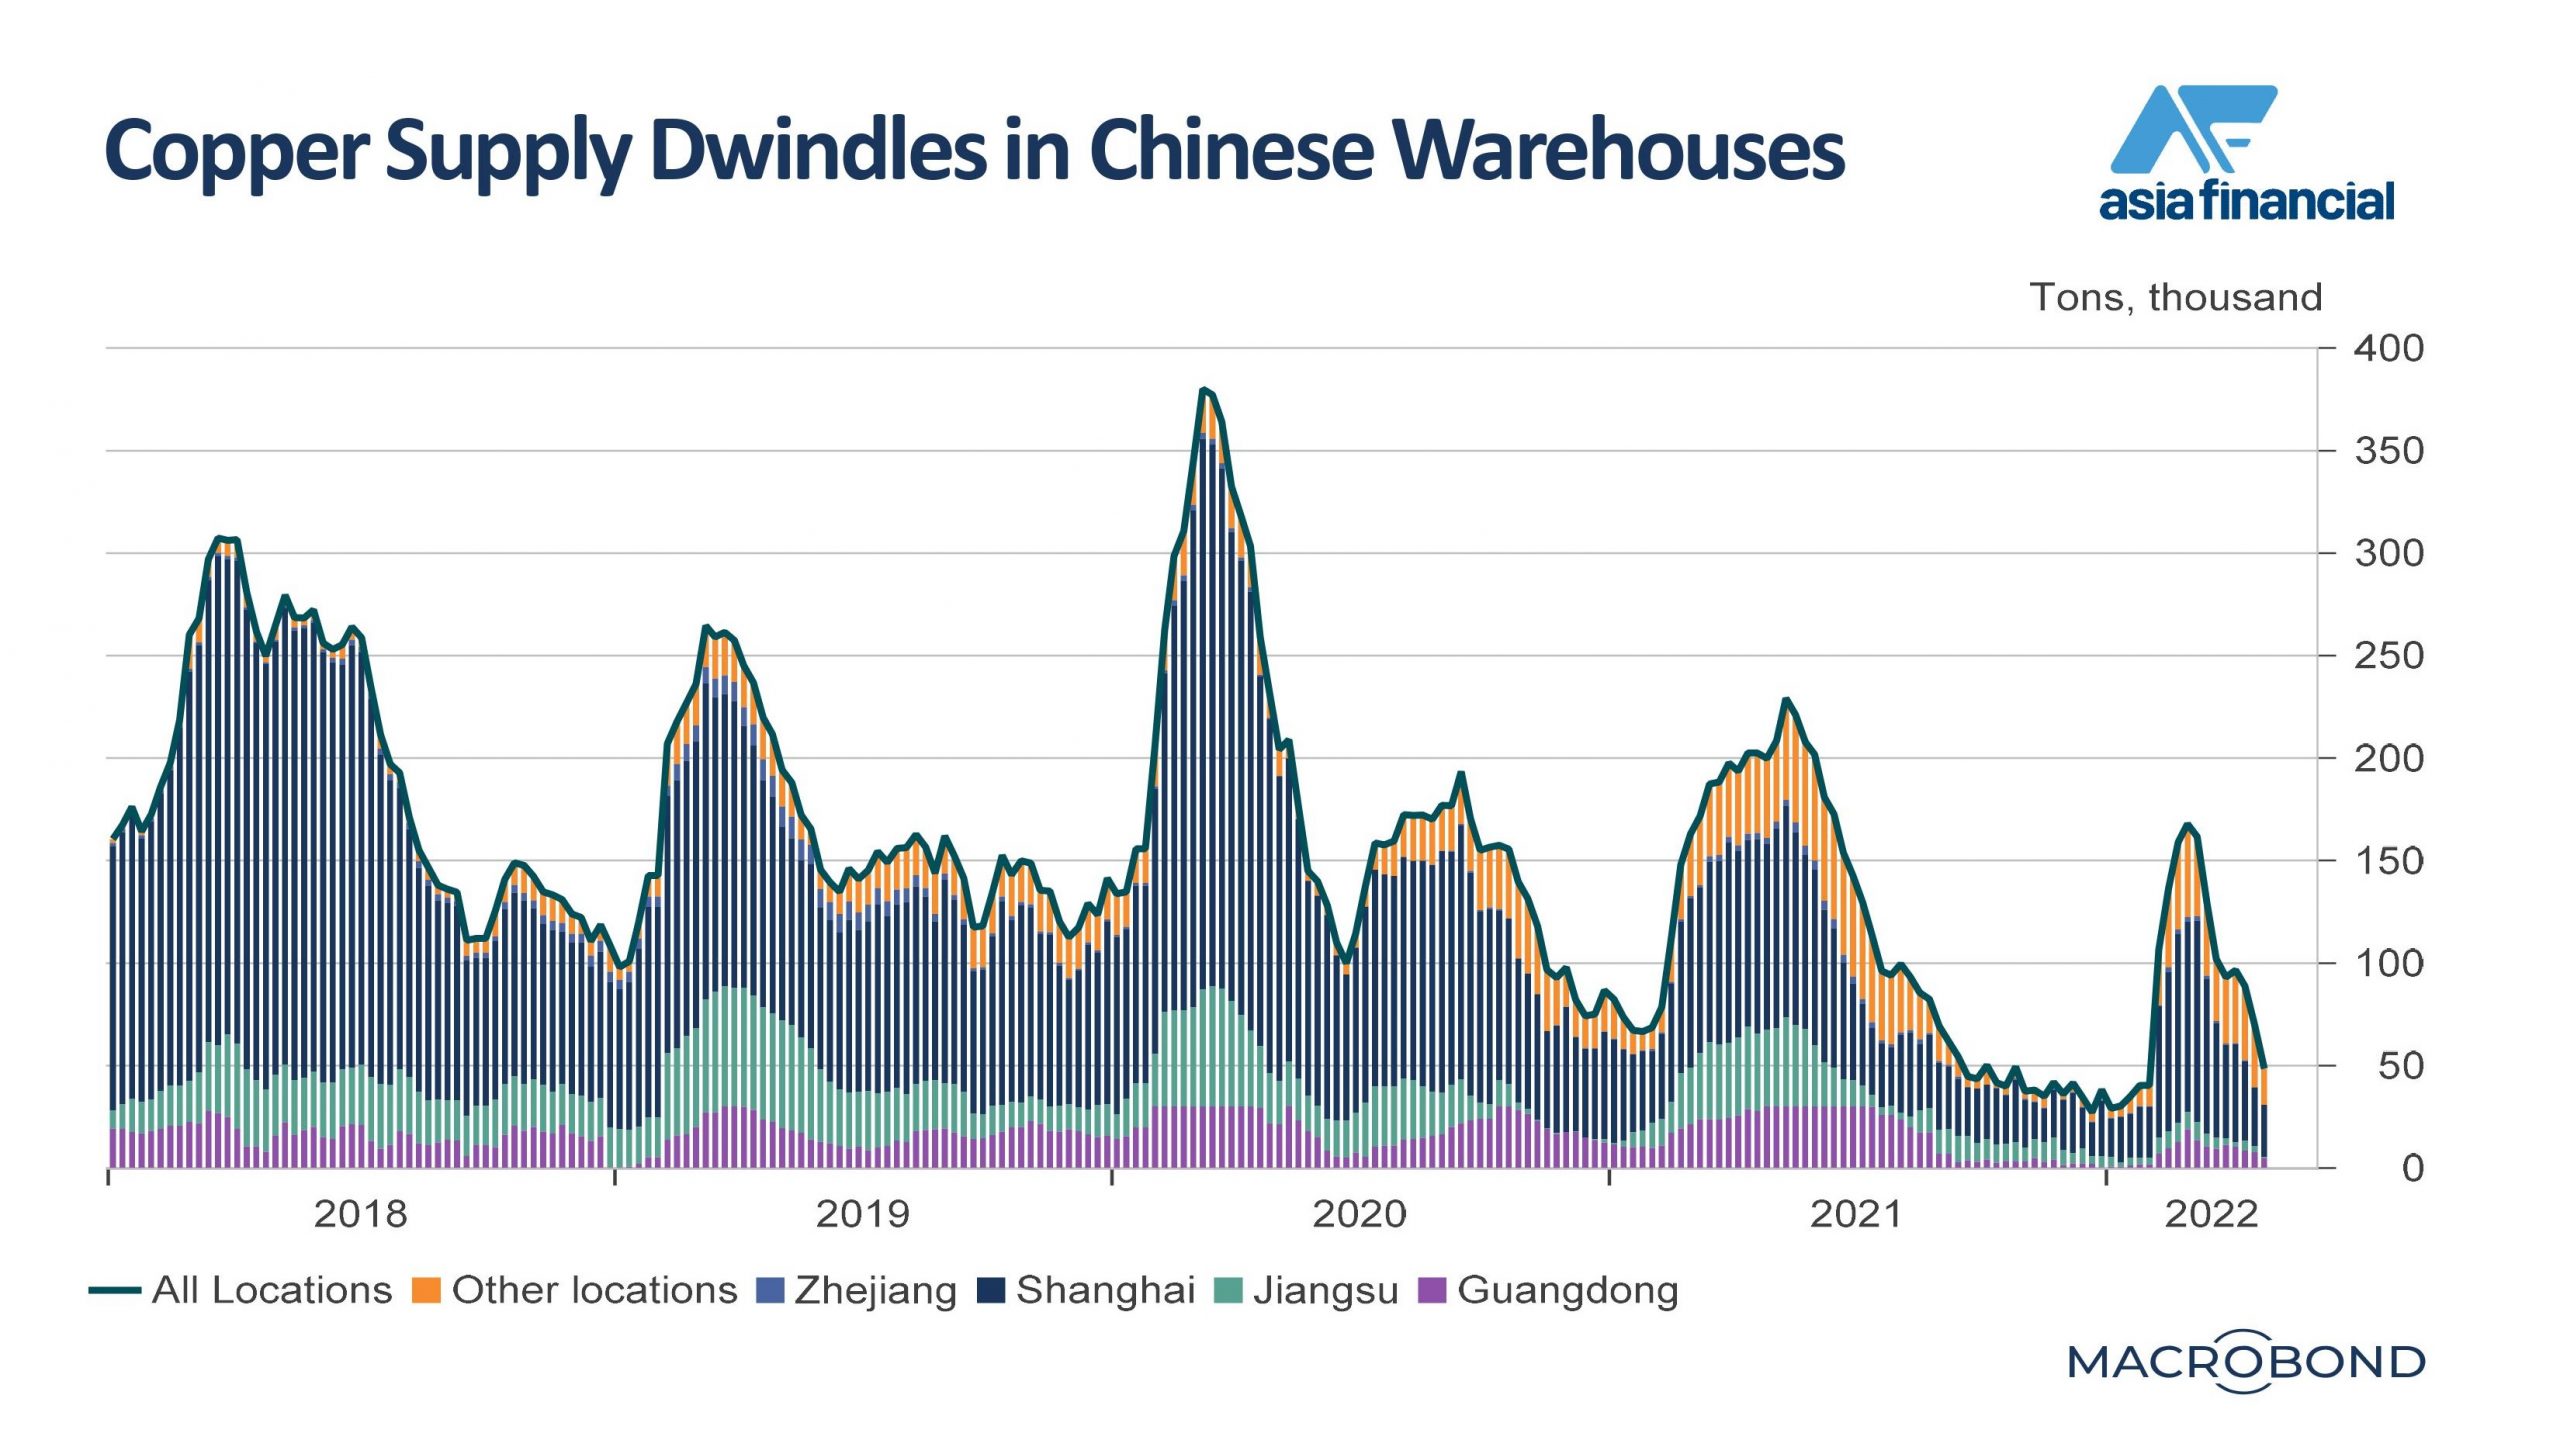 在 2022 年初供应增加之后，中国仓库中的铜库存正在迅速减少。